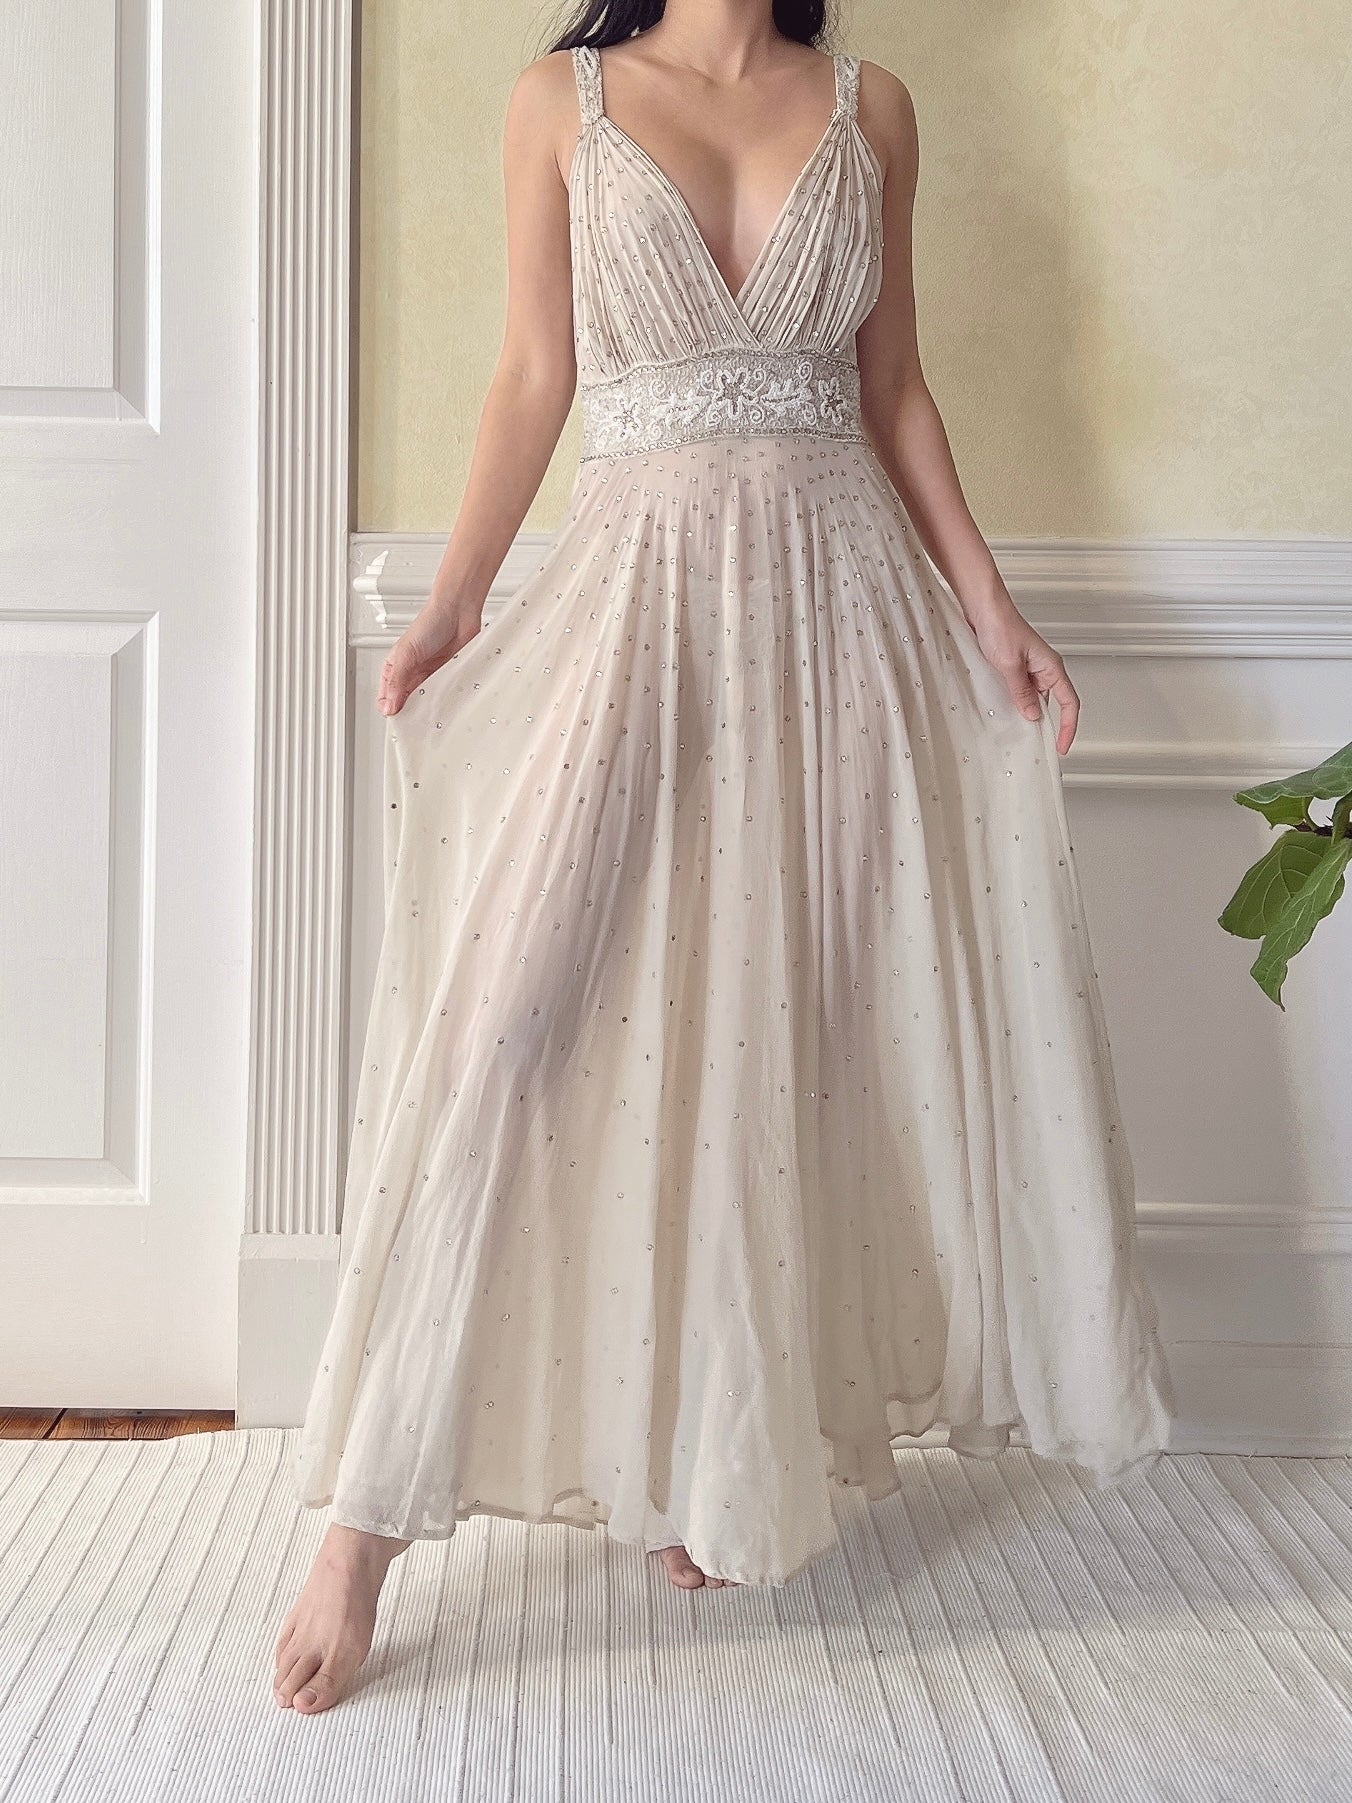 1930s Silk Crystal Embellished Dress - S